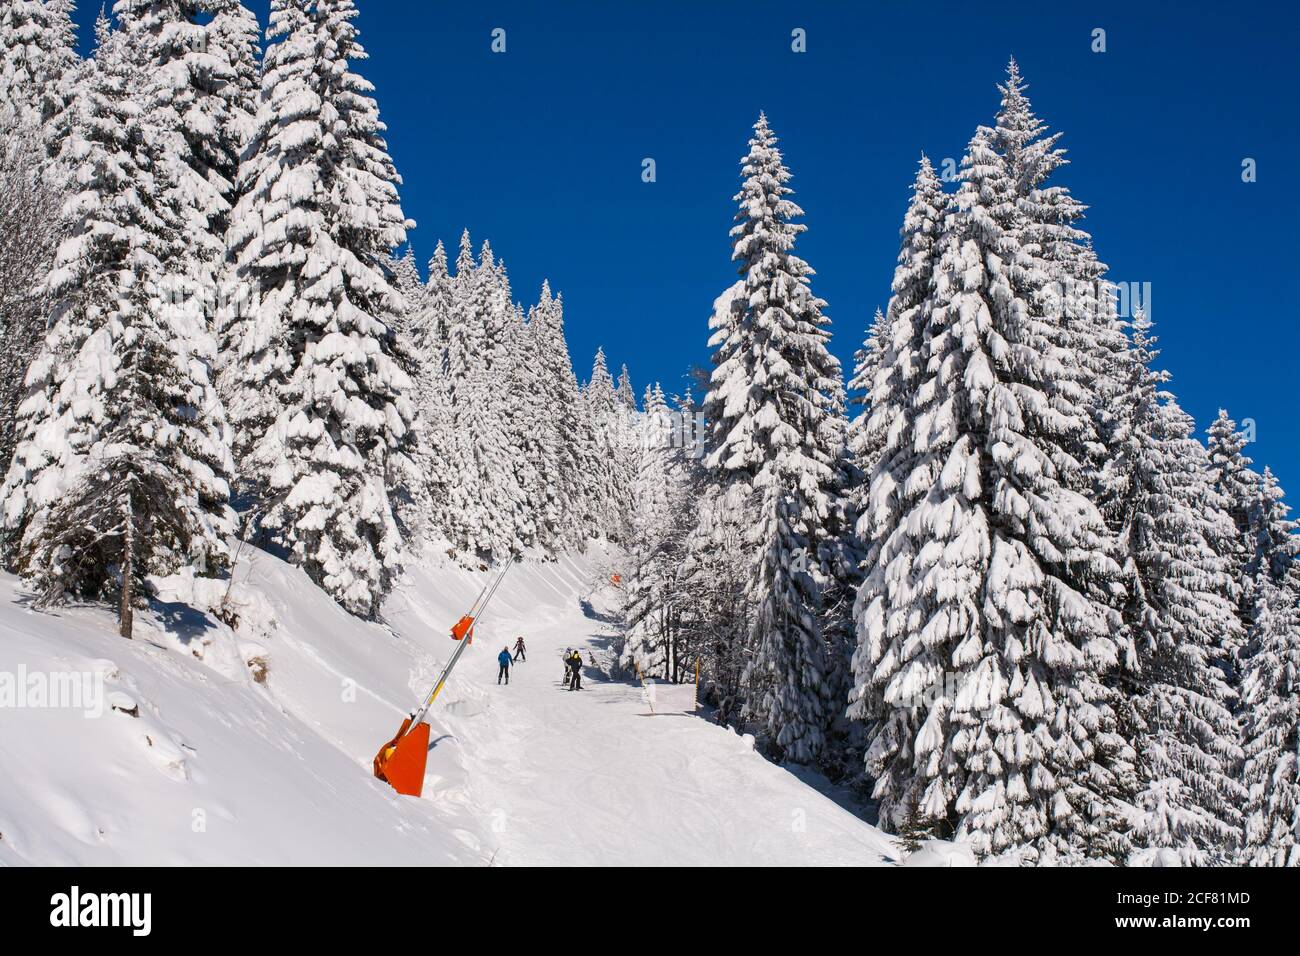 Panorama von Skigebiet, Skipiste, Menschen, Bergblick im Winter Stockfoto